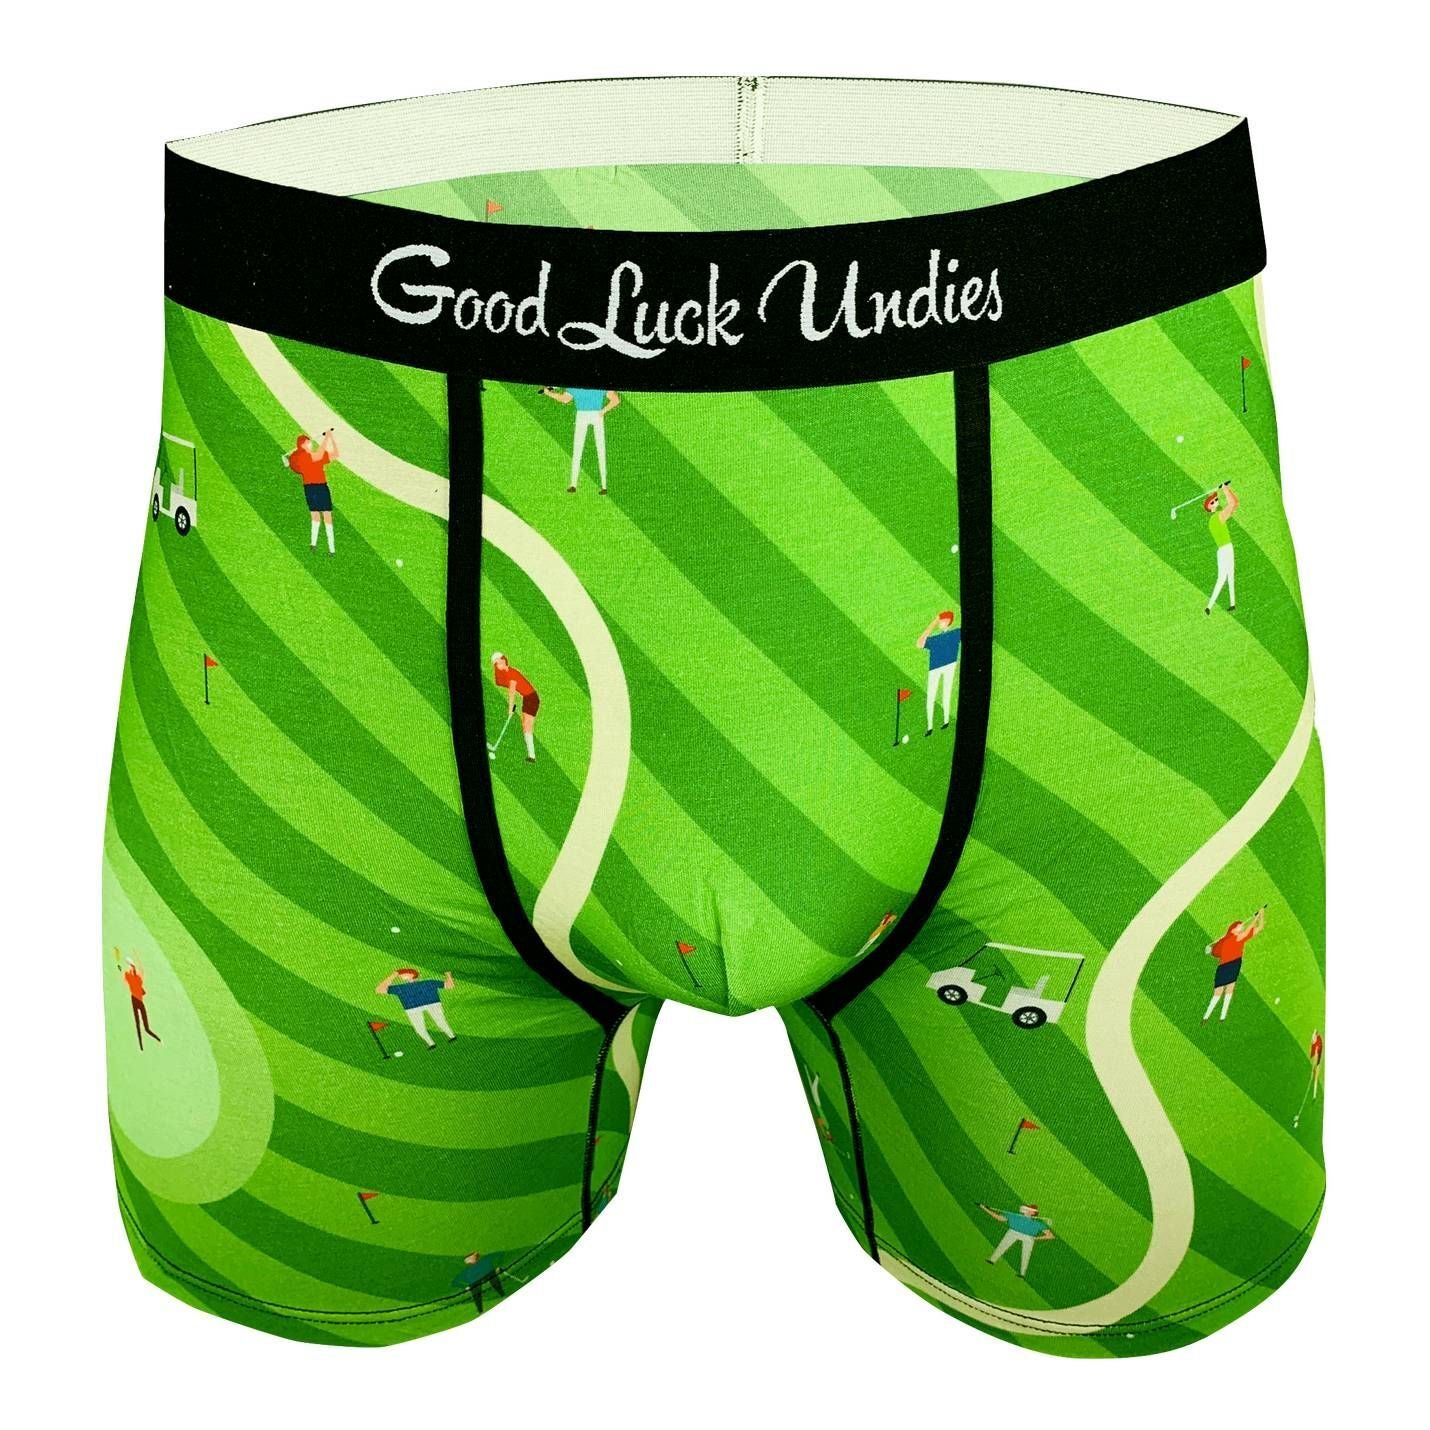 Underwear men's style stripe underwear soft breathable knickers short briefs  bd15897